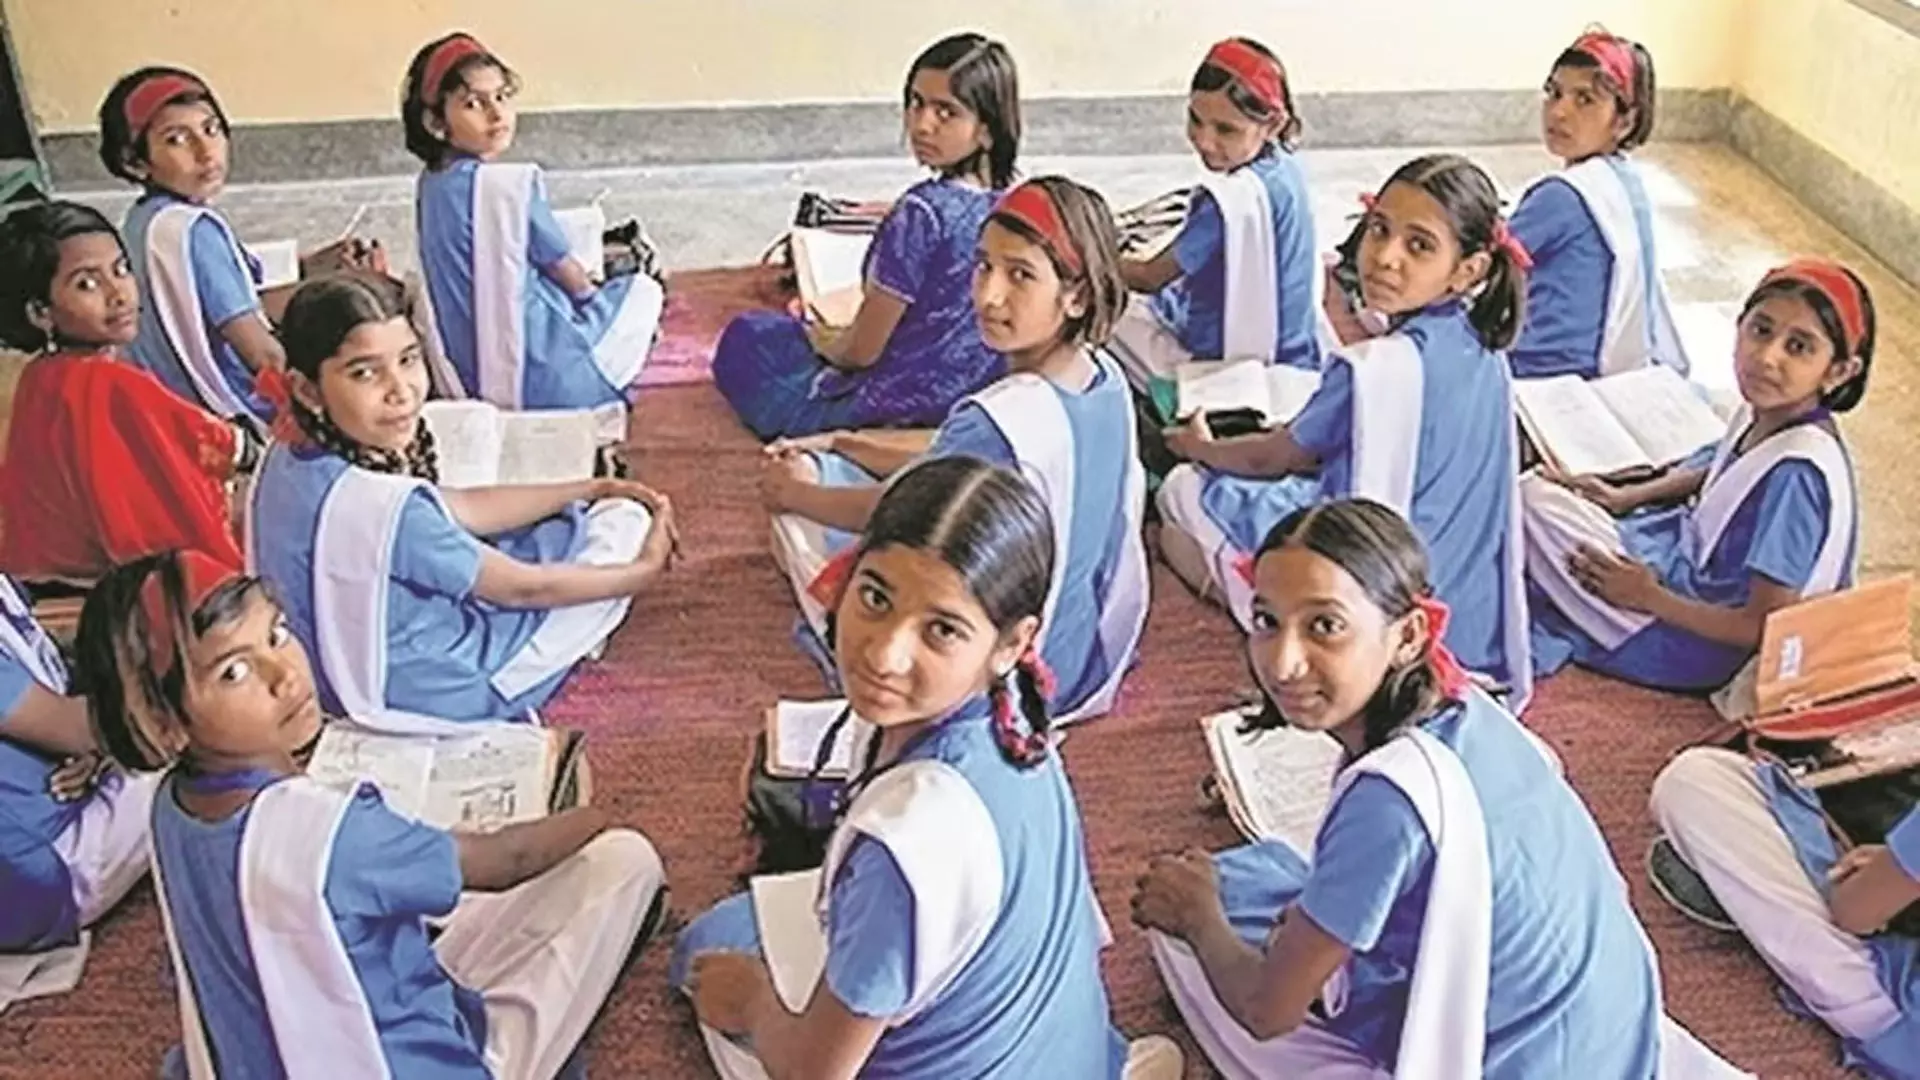 असम के मंत्री ने 12वीं के बाद लड़कियों की शिक्षा के लिए वित्तीय सहायता का वादा किया